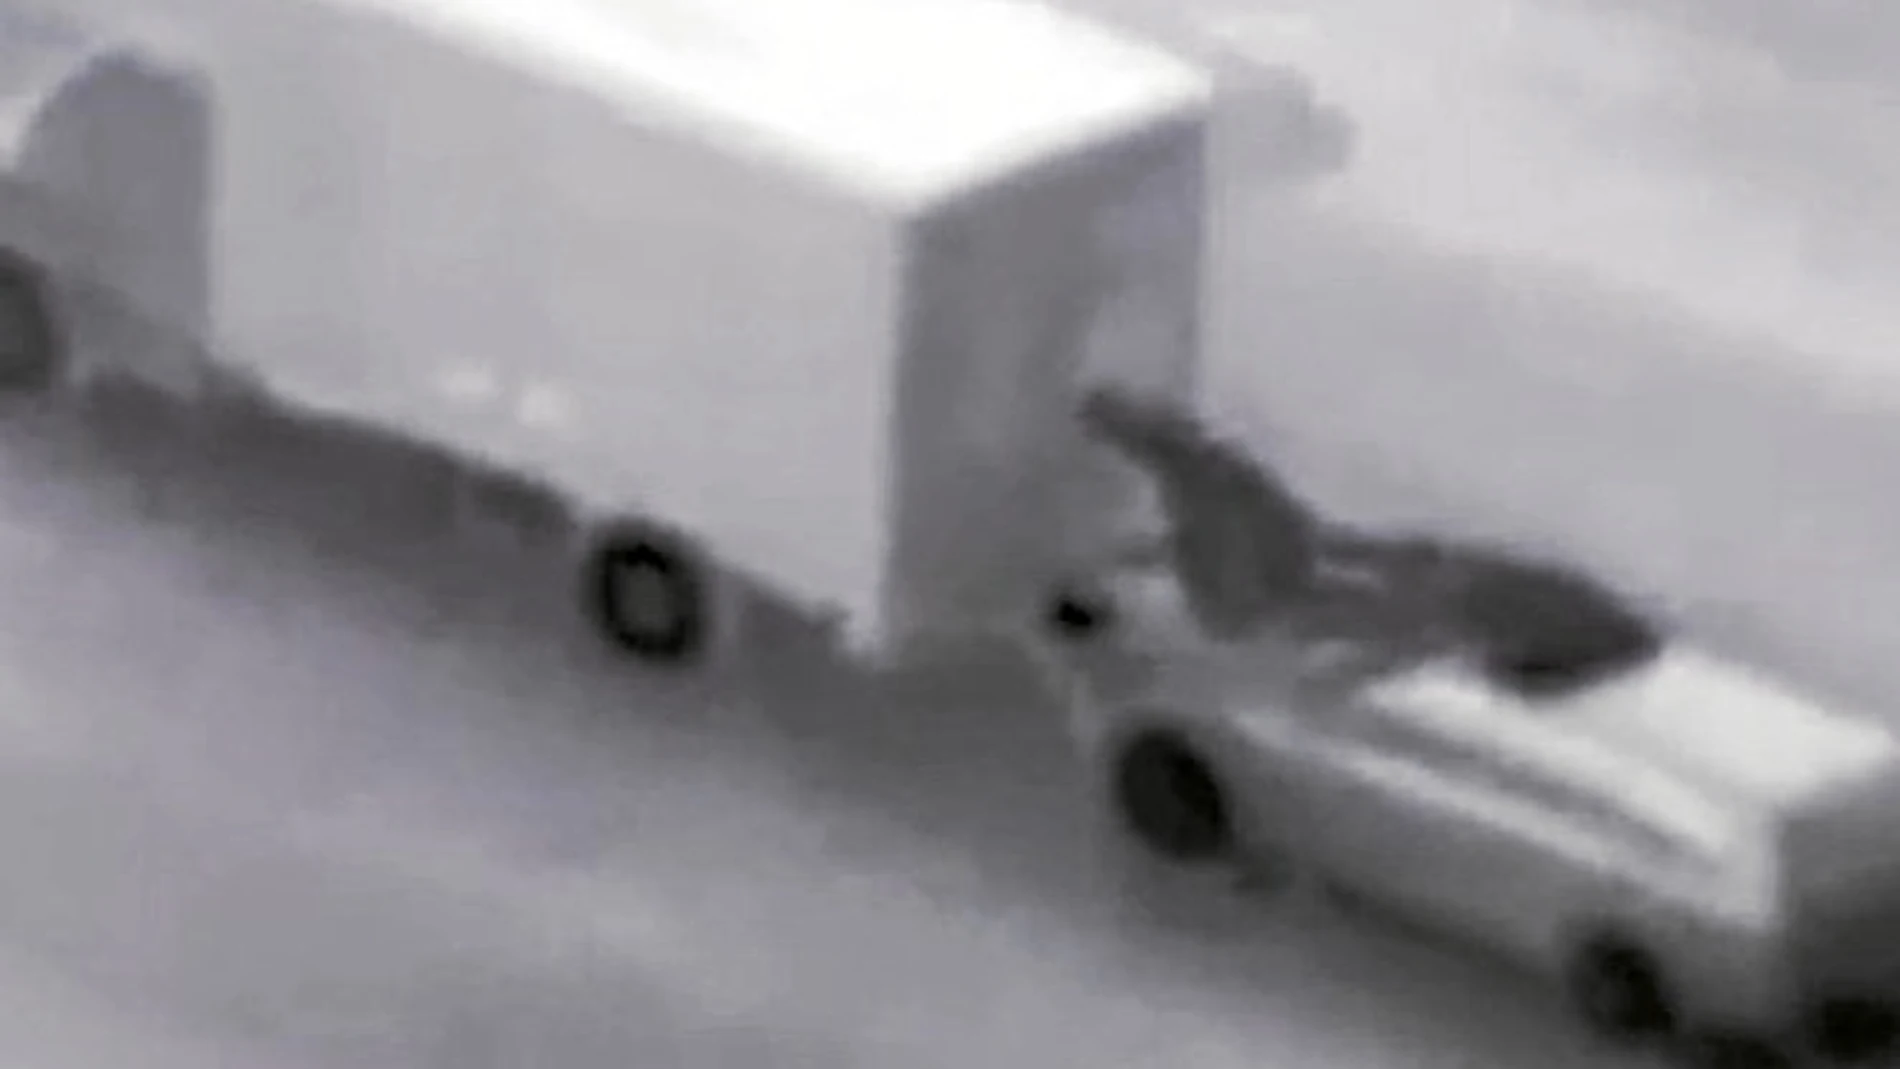 Tres engancharse al camión, uno de los cacos sale por el techo solar del coche y, «surfeando», llega hasta la puerta del camión. La rompe y accede al interior